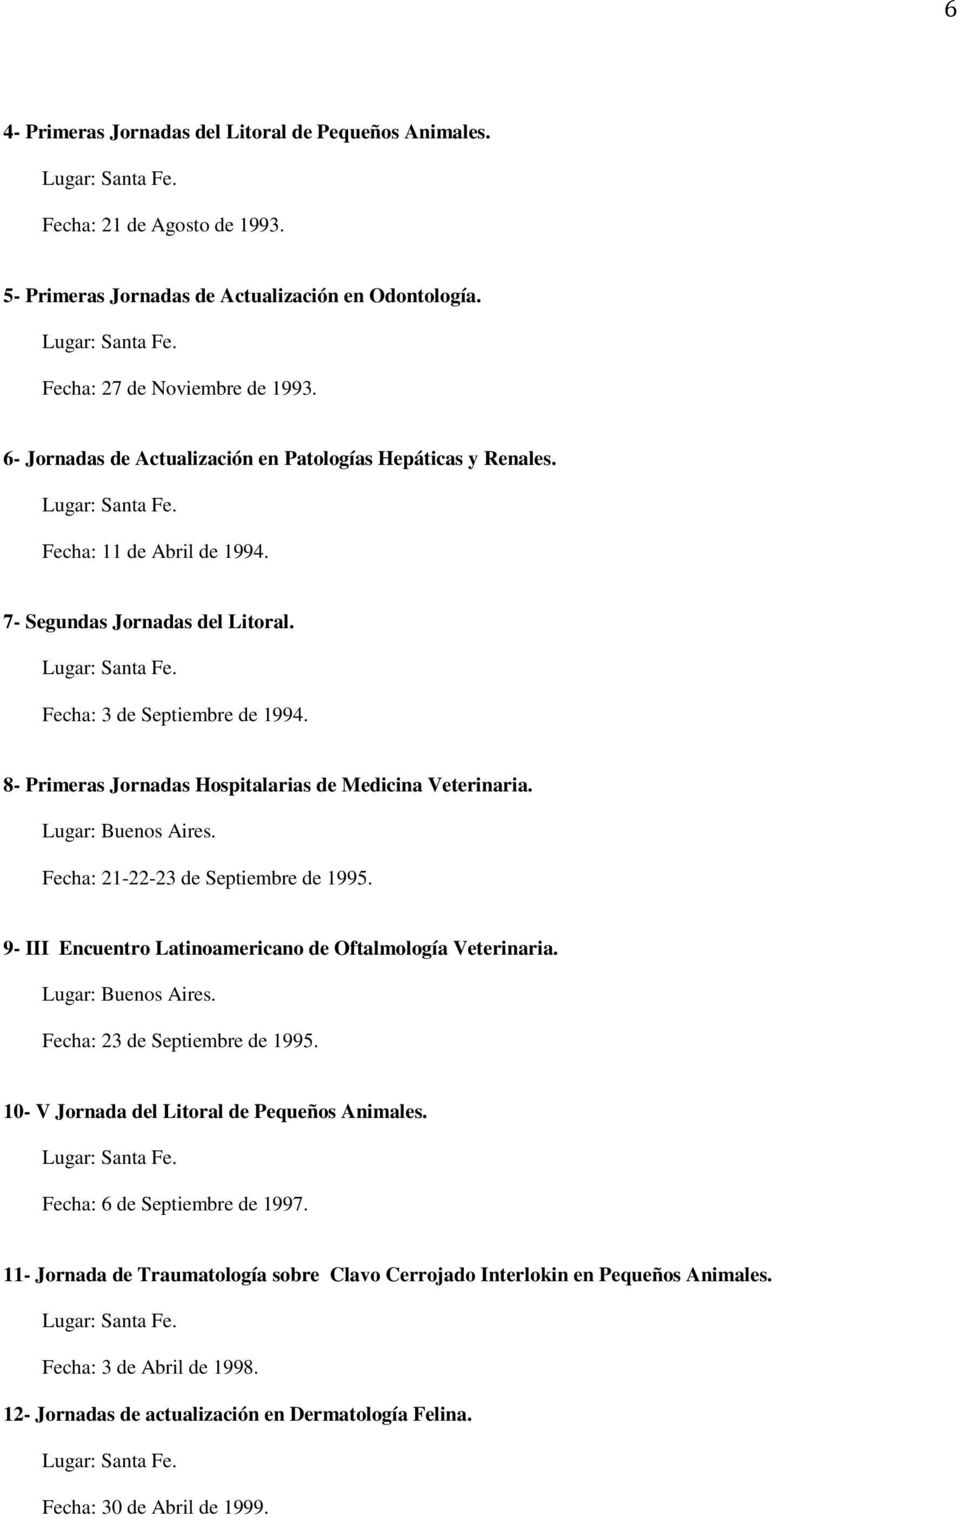 8- Primeras Jornadas Hospitalarias de Medicina Veterinaria. Fecha: 21-22-23 de Septiembre de 1995. 9- III Encuentro Latinoamericano de Oftalmología Veterinaria. Fecha: 23 de Septiembre de 1995.